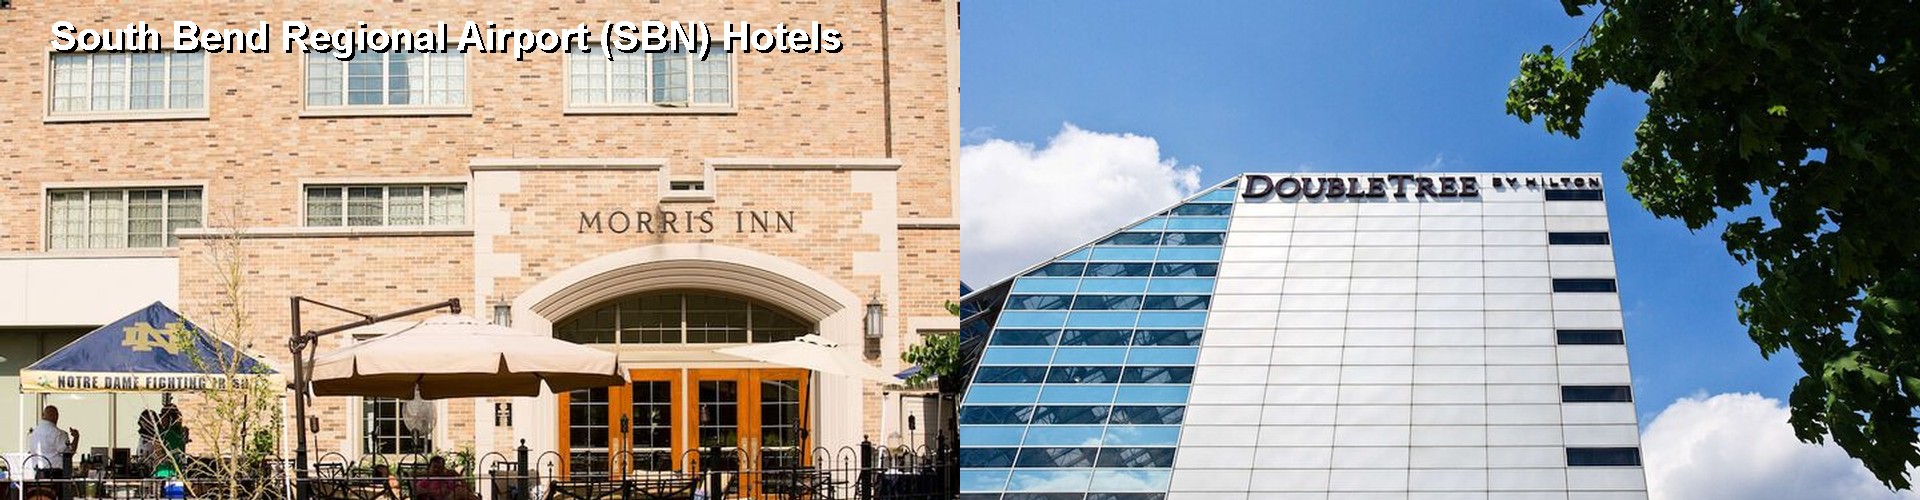 5 Best Hotels near South Bend Regional Airport (SBN)